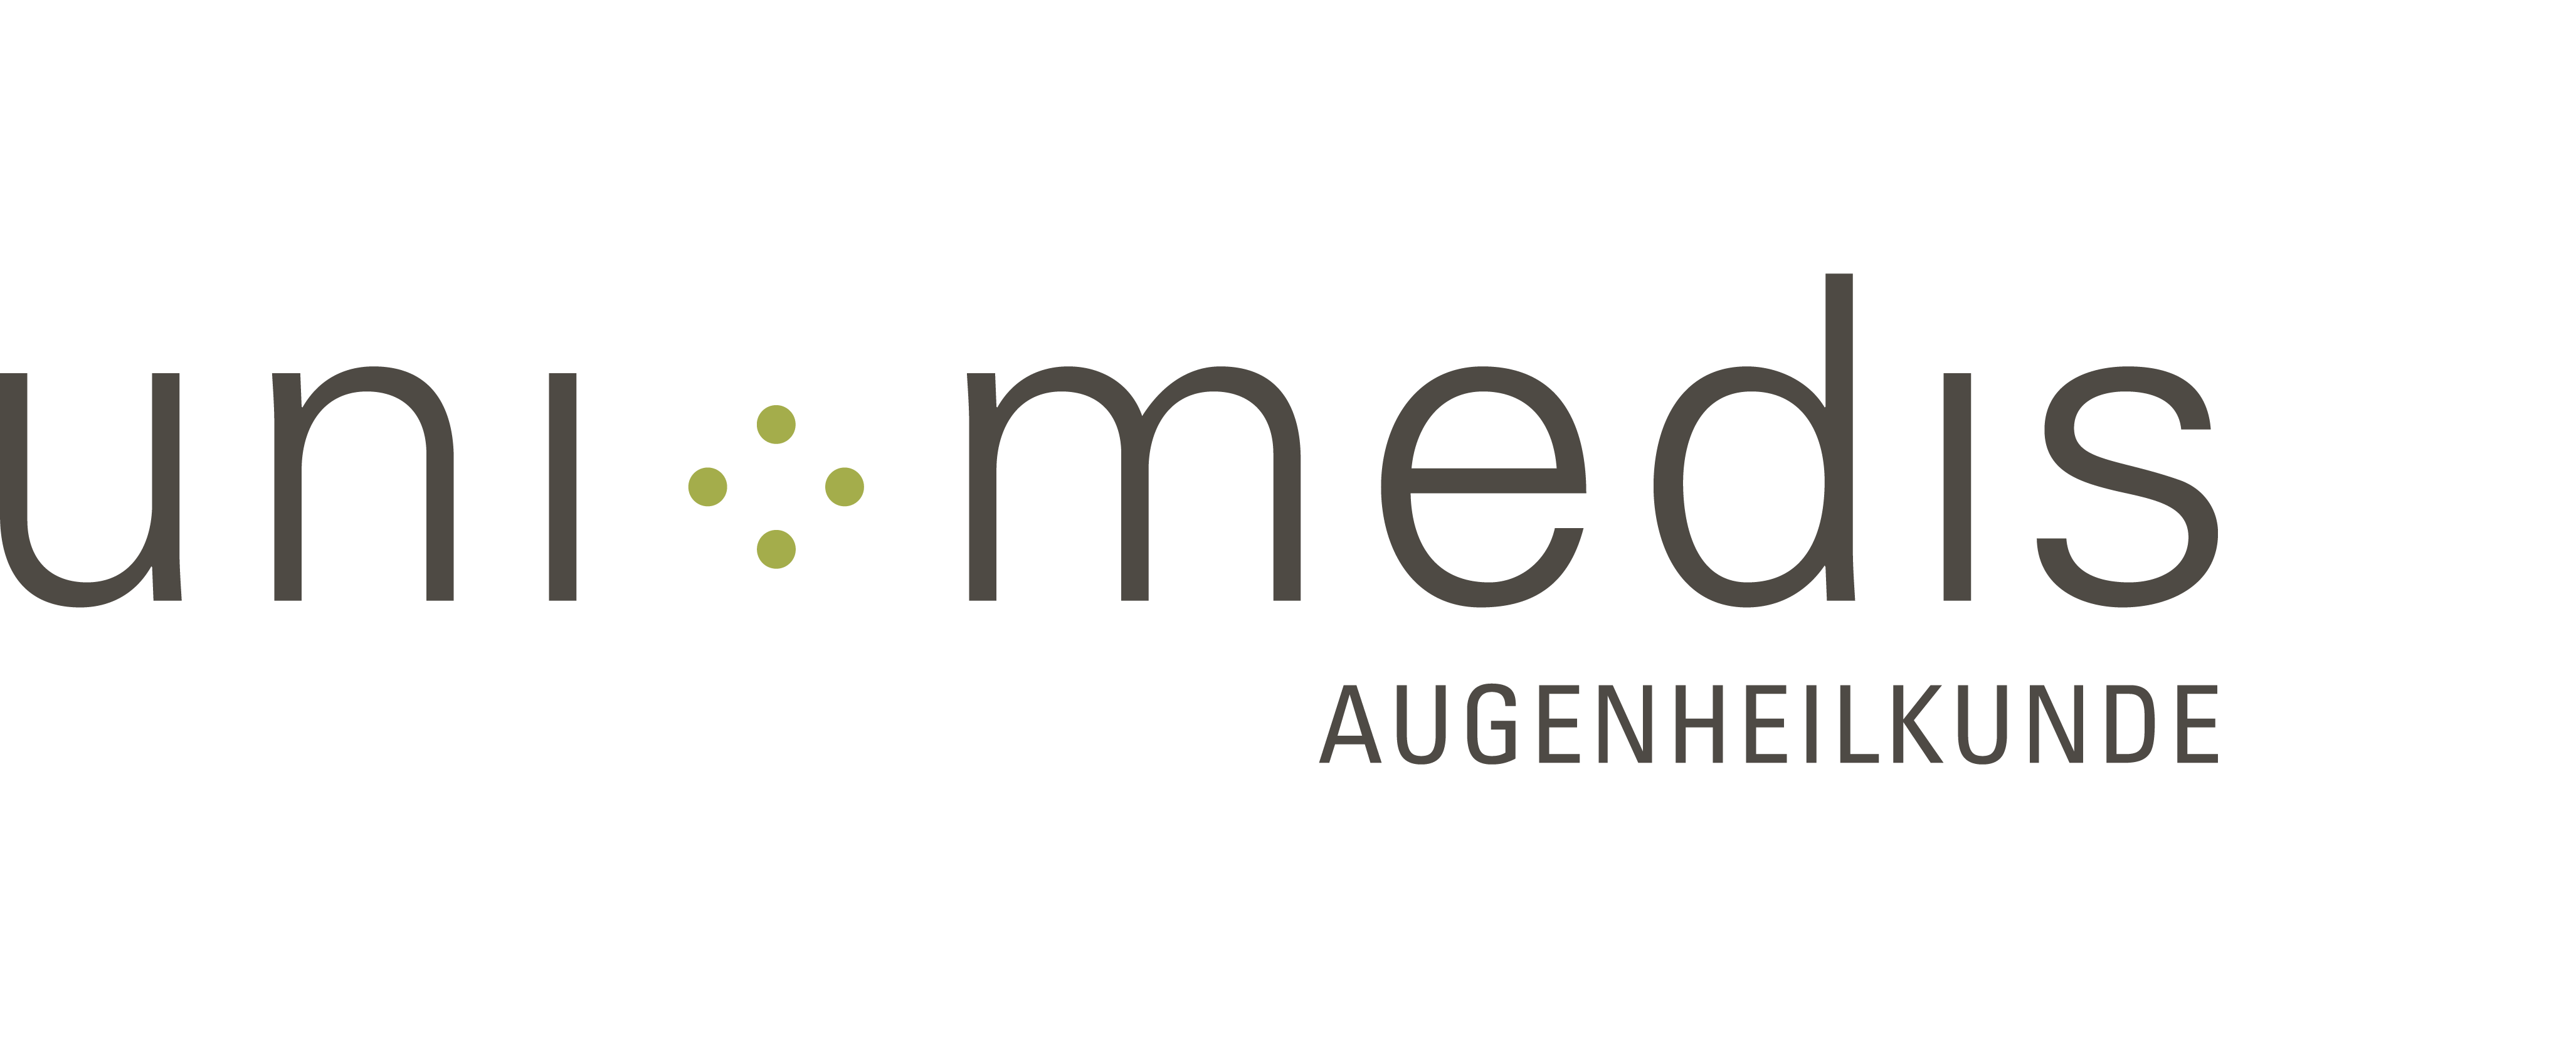 unimedis_AUGENHEILKUNDE_Logo_Website